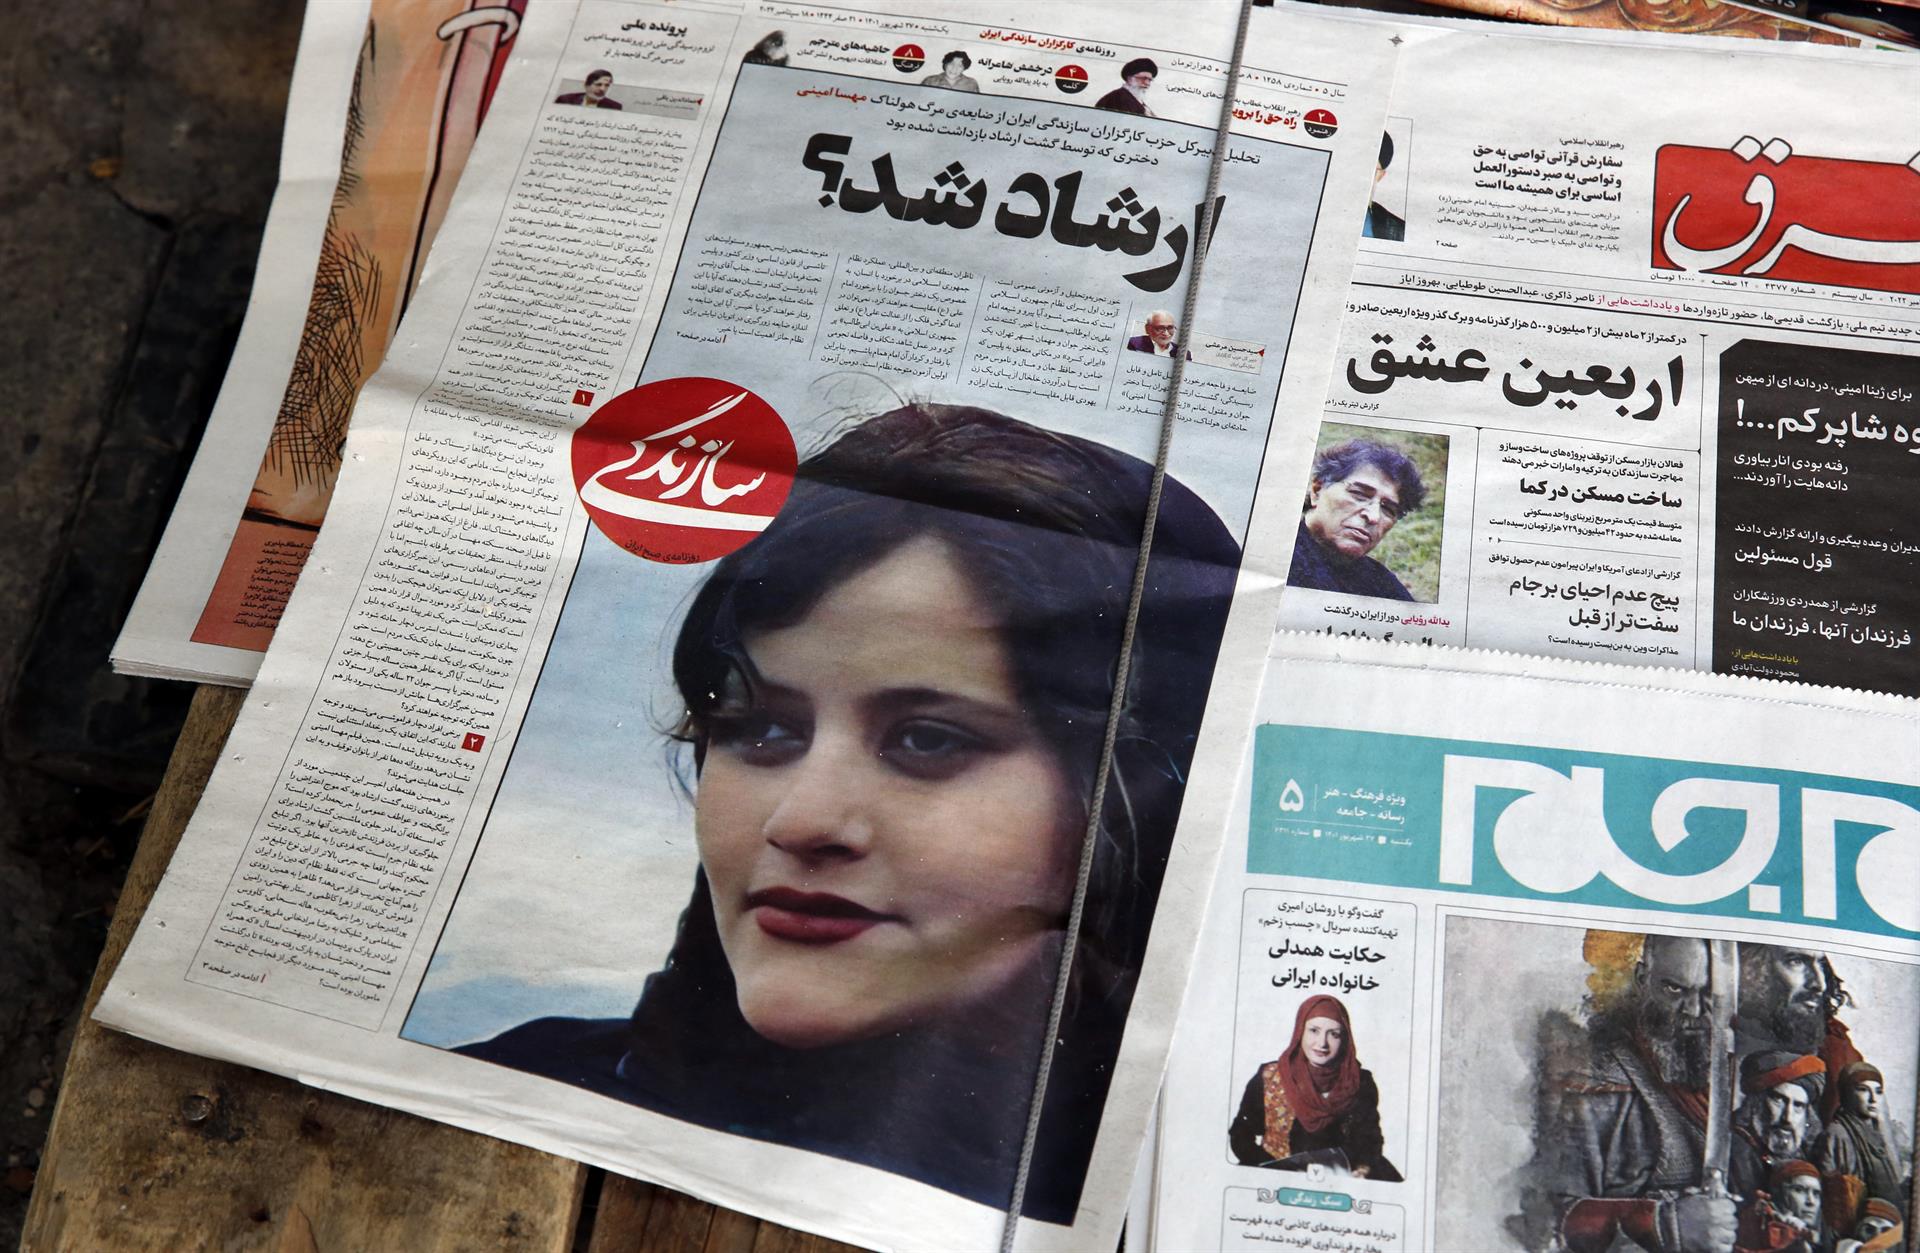 Forense iraní niega que Amini muriera por golpes y apunta a dolencia previa